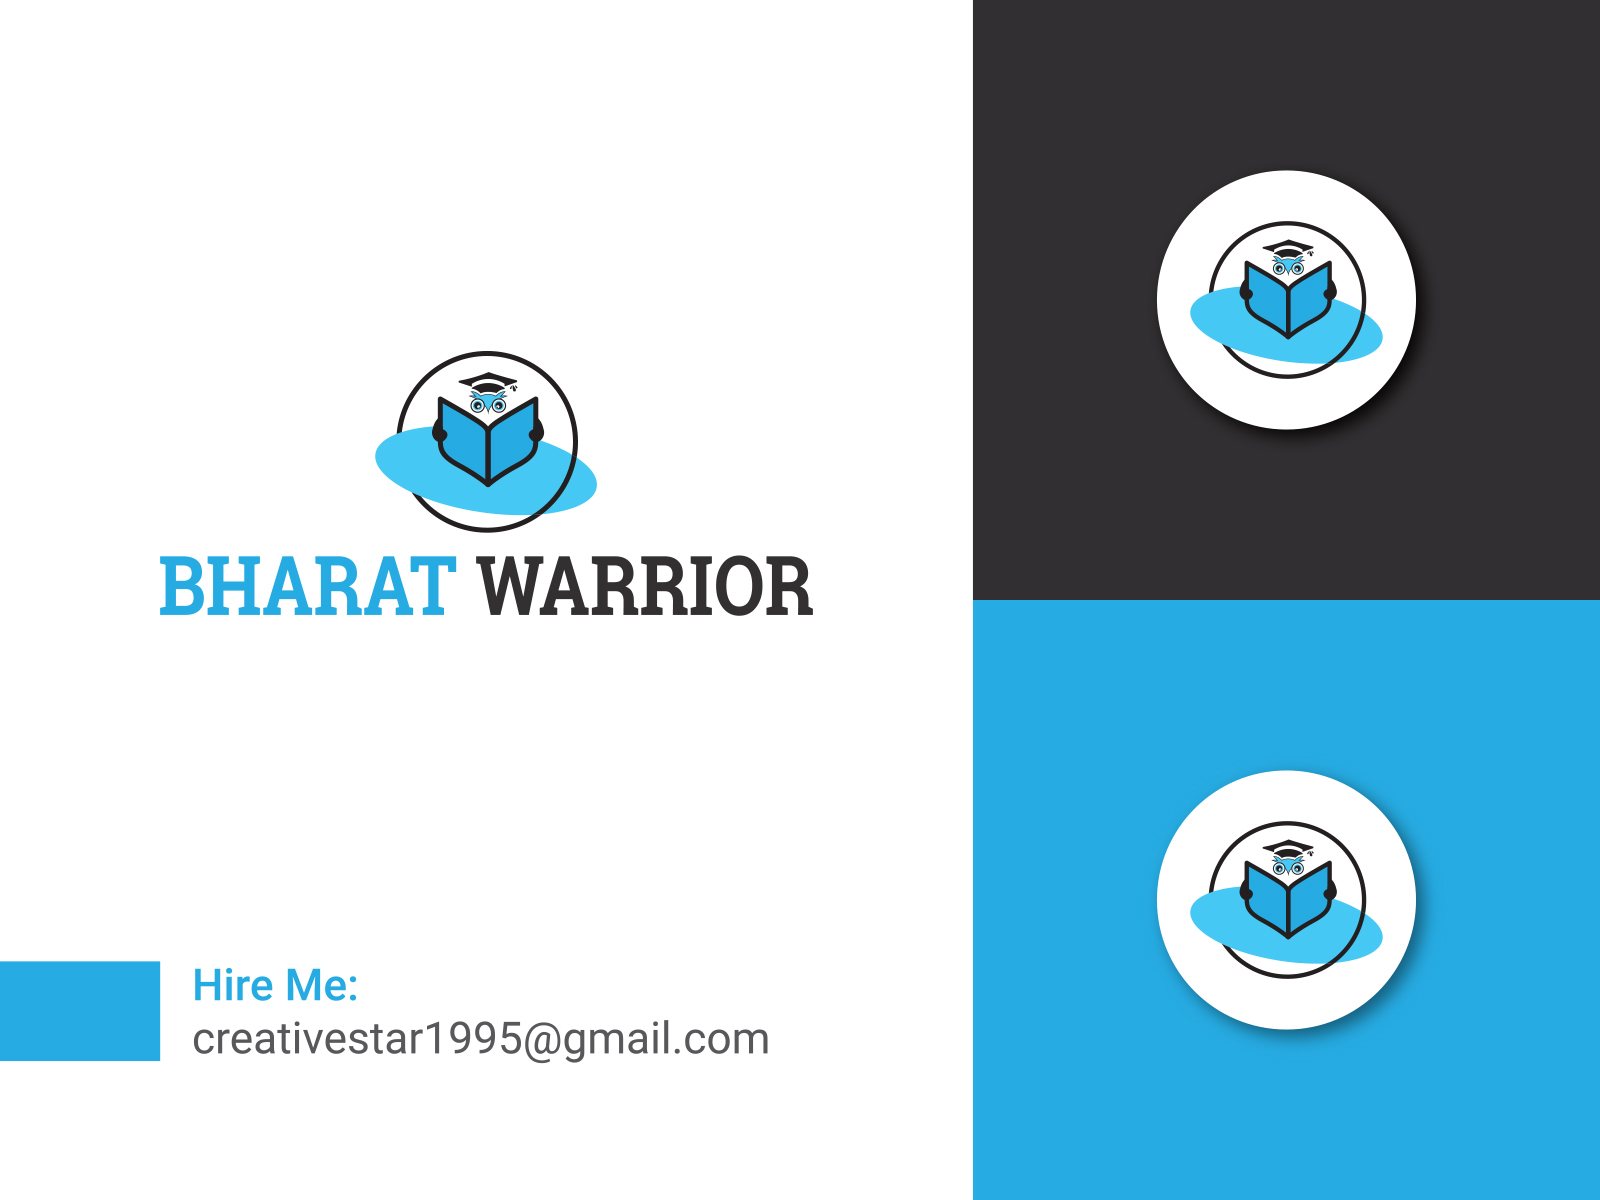 Logo Design #1694766 by Bharat - Logo Design Contest by 08ryanpietrzak |  Hatchwise